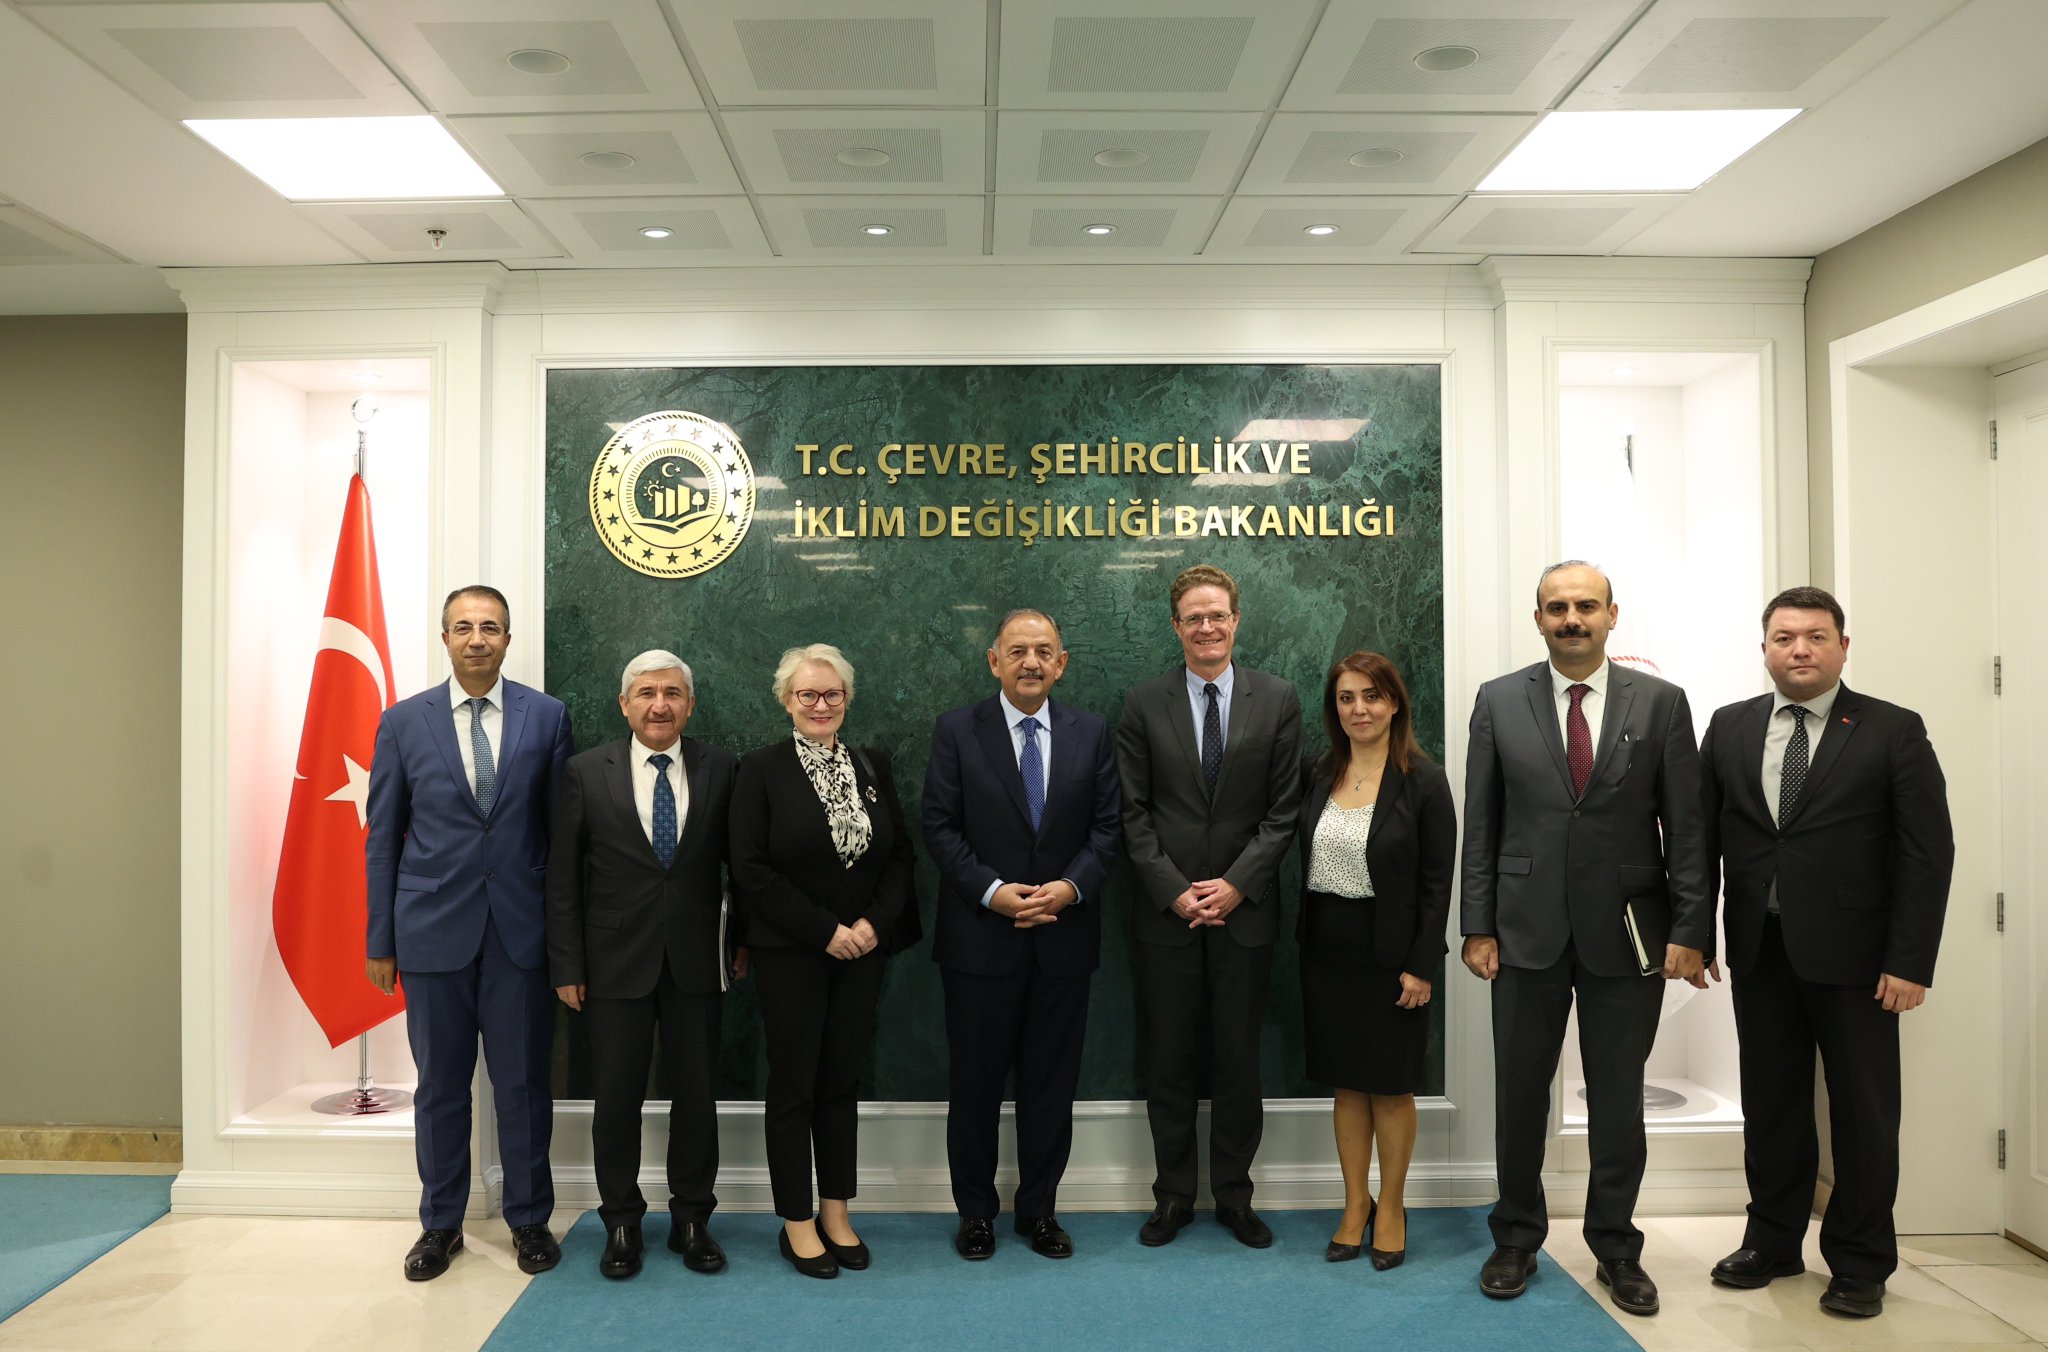 AB Türkiye Delegasyonu Başkanı Meyer: “Türkiye’nin Çalışmaları Örnek Alınmalı”